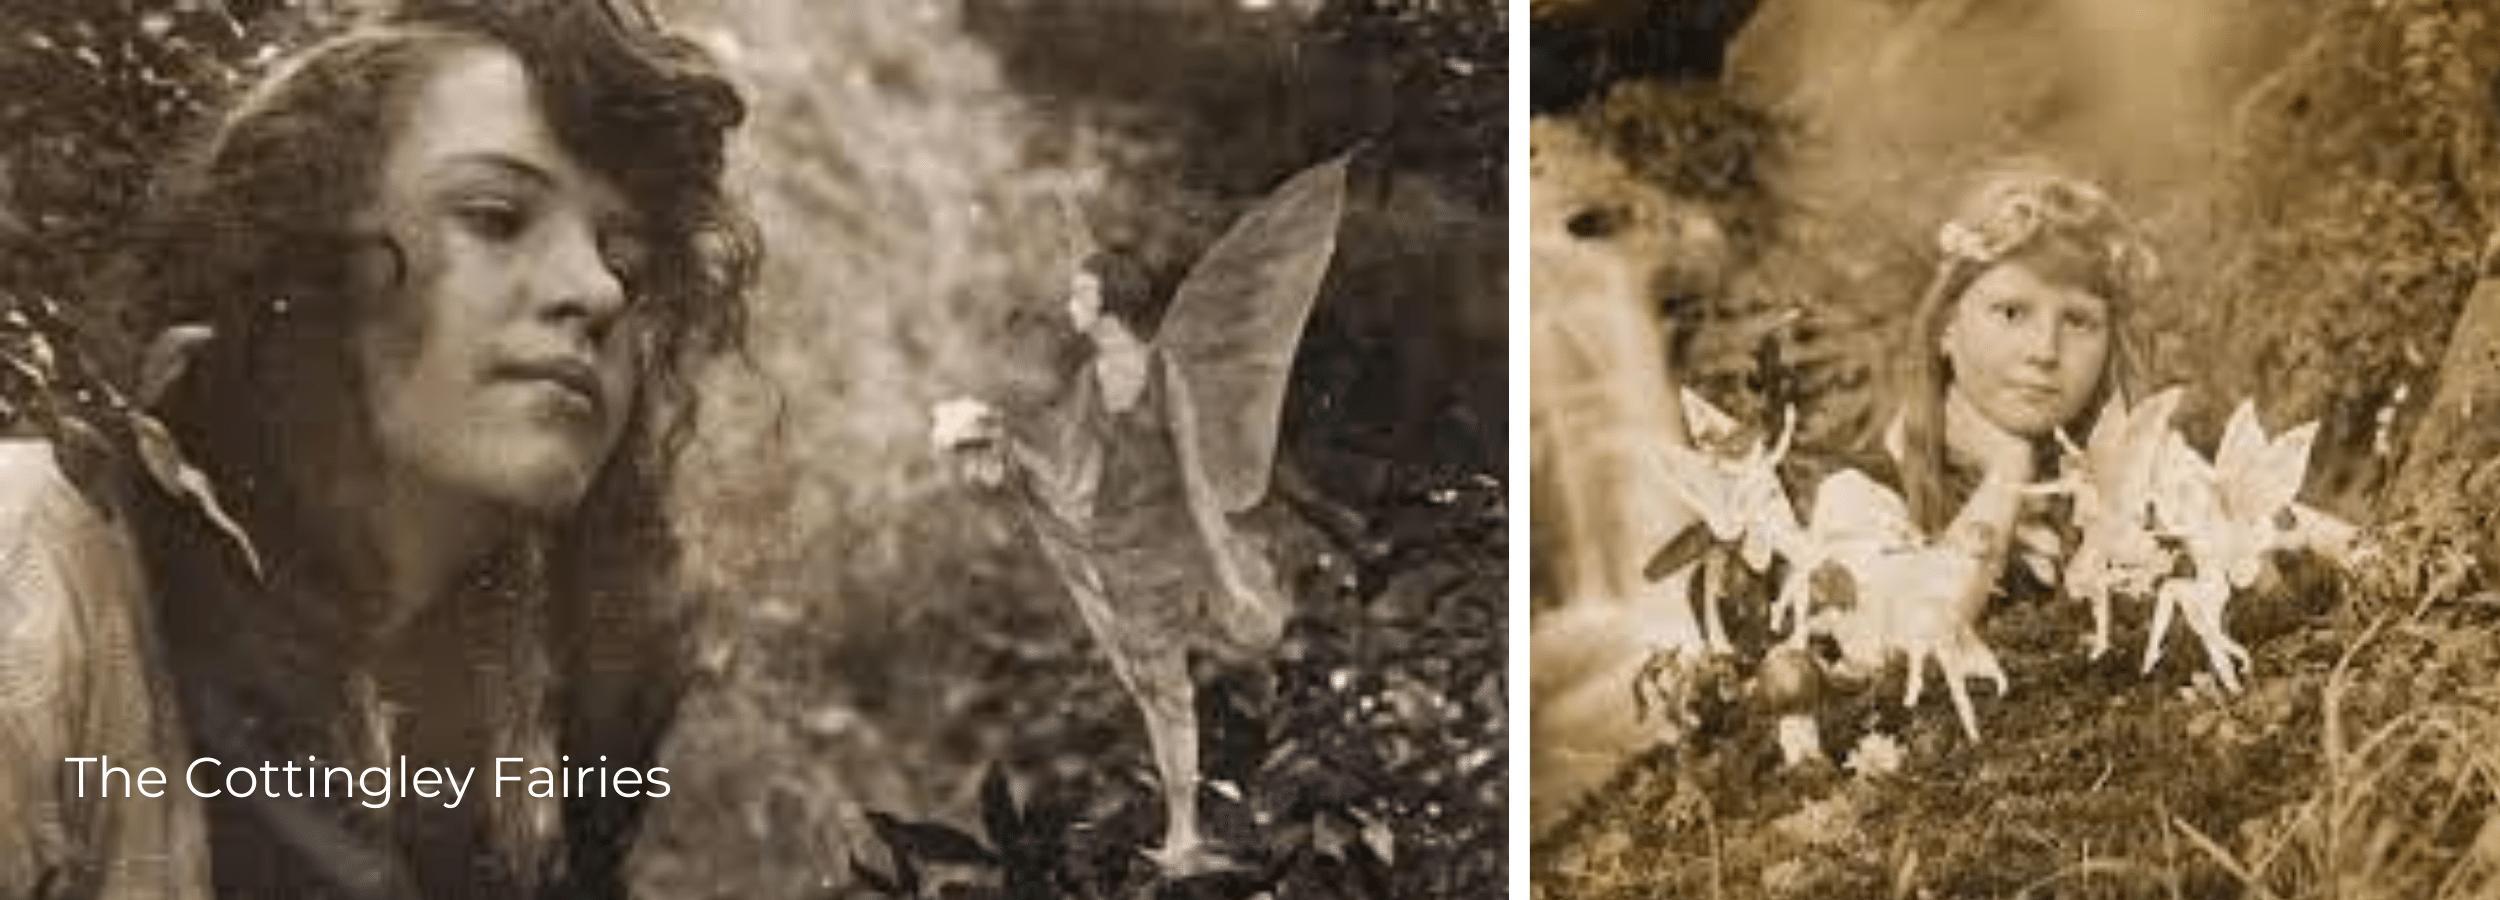 The Cottingley Fairies photographs